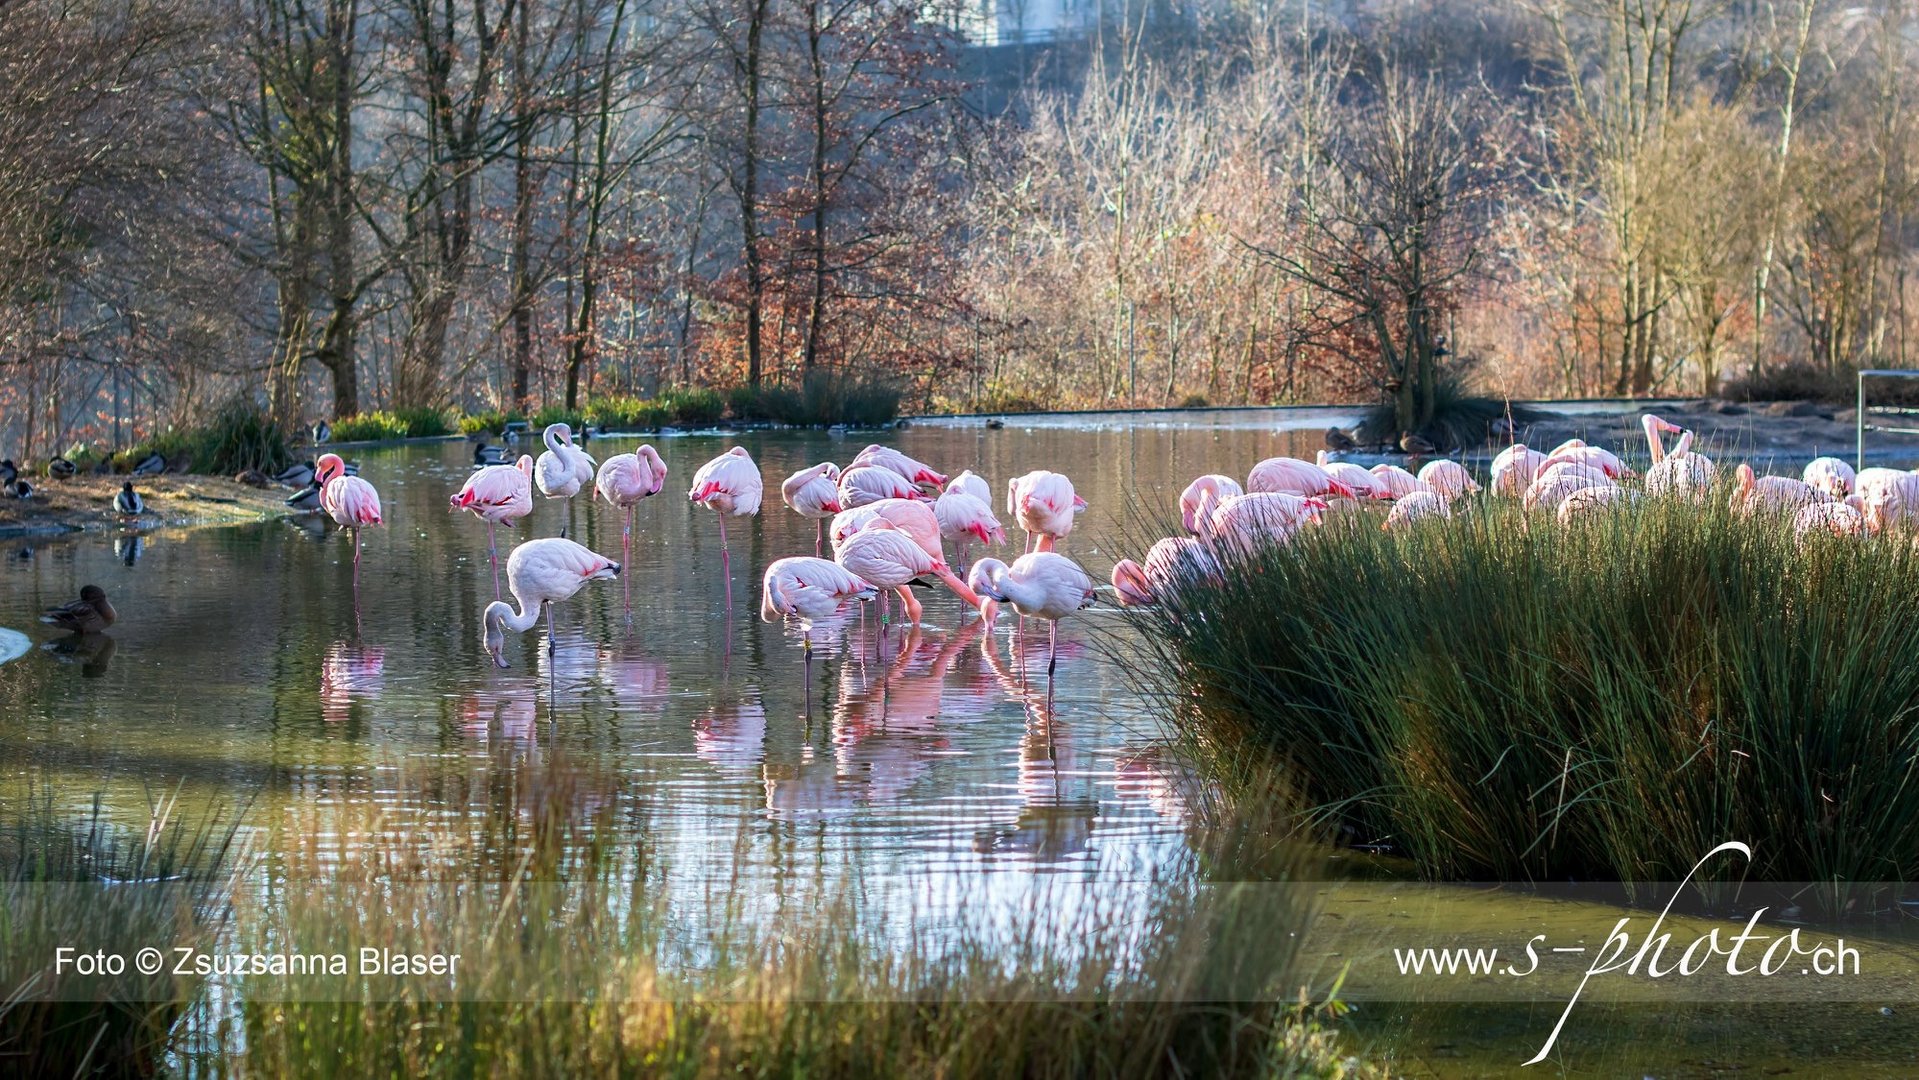 Flamingos in Bern